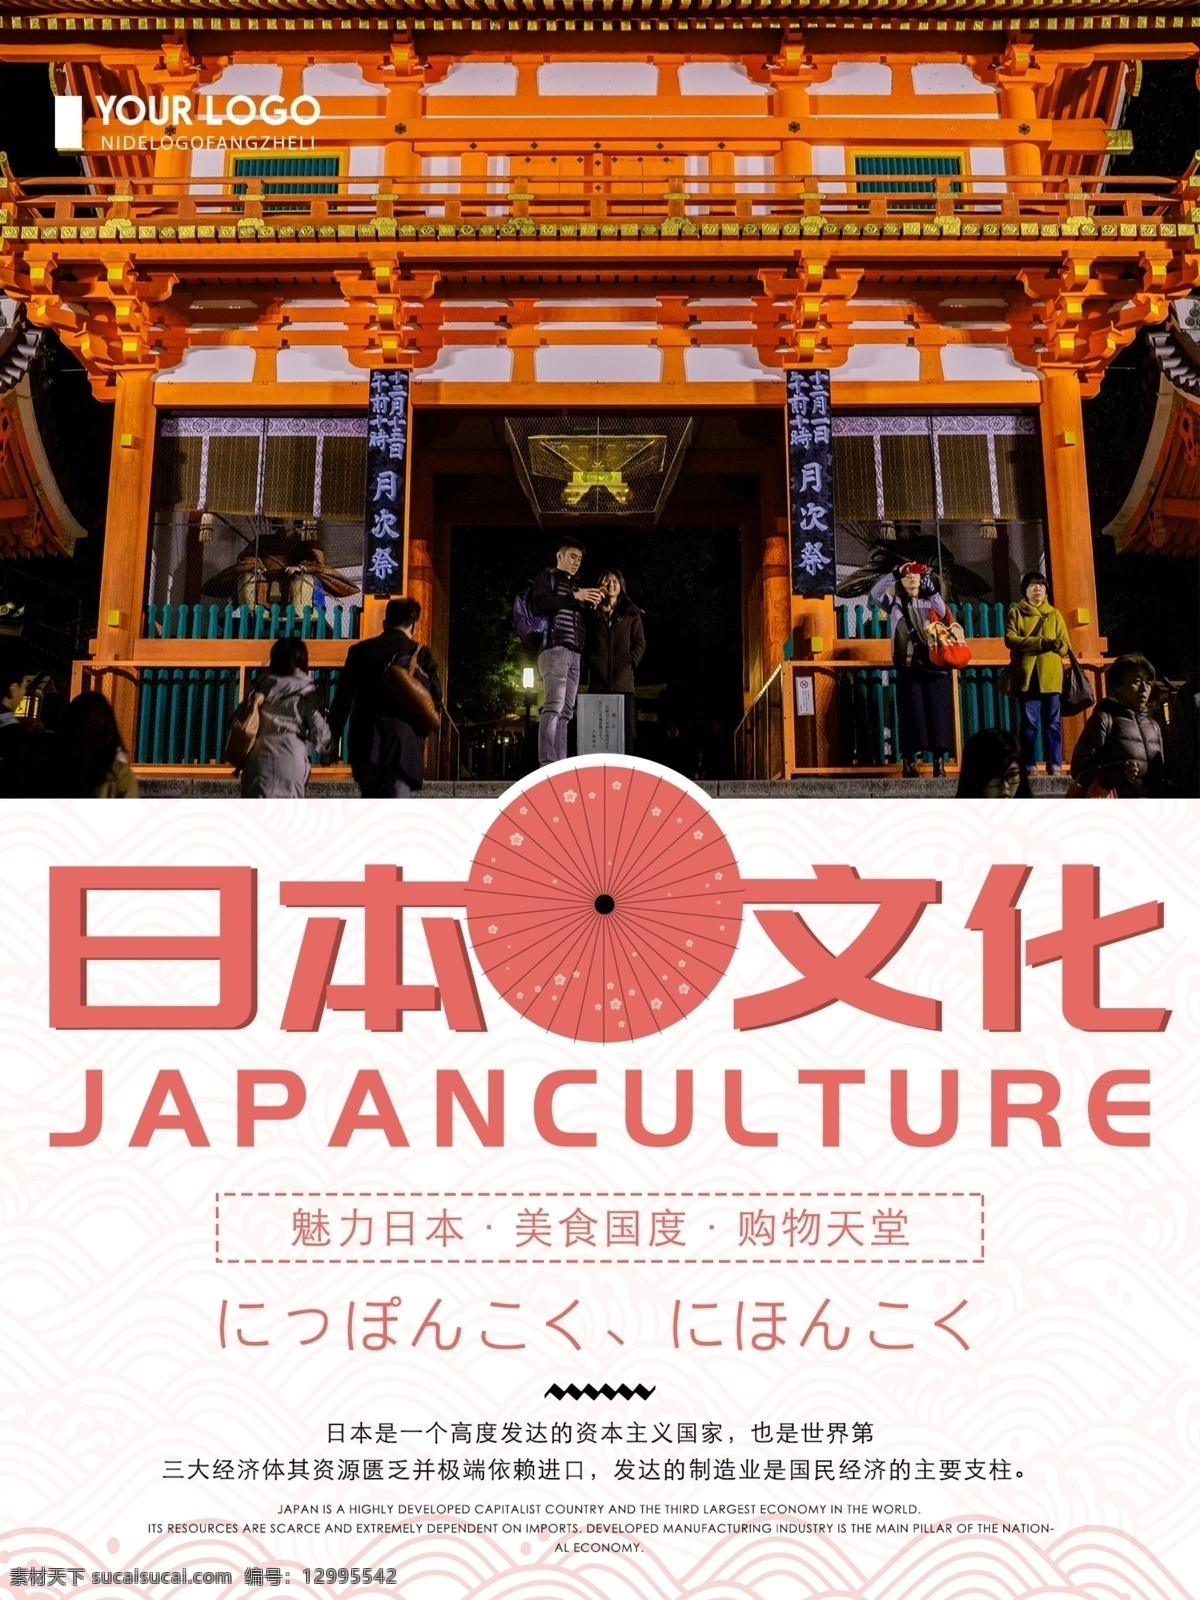 创意 简约 日本 文化 宣传海报 日本文化 创意文化海报 日本文化宣传 简约清新海报